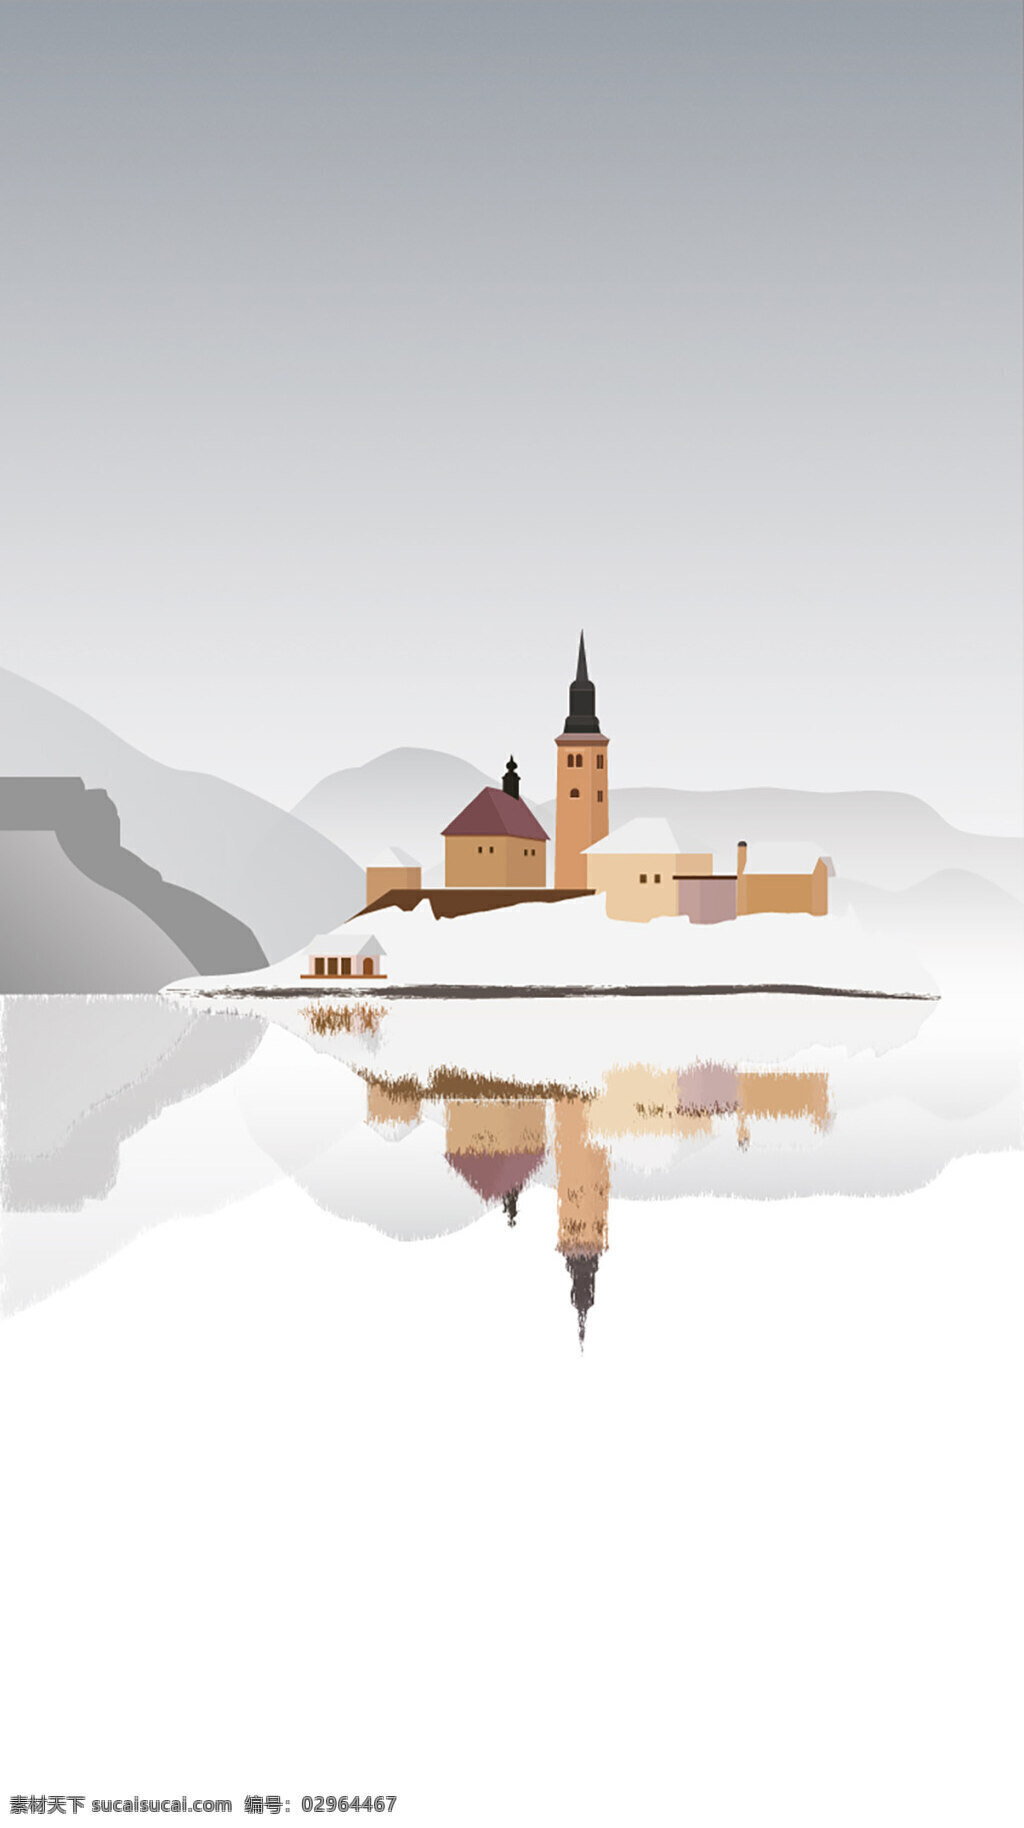 简约 古堡 白雪皑皑 风景 矢量 插图 冰湖 简约矢量插图 背景设计